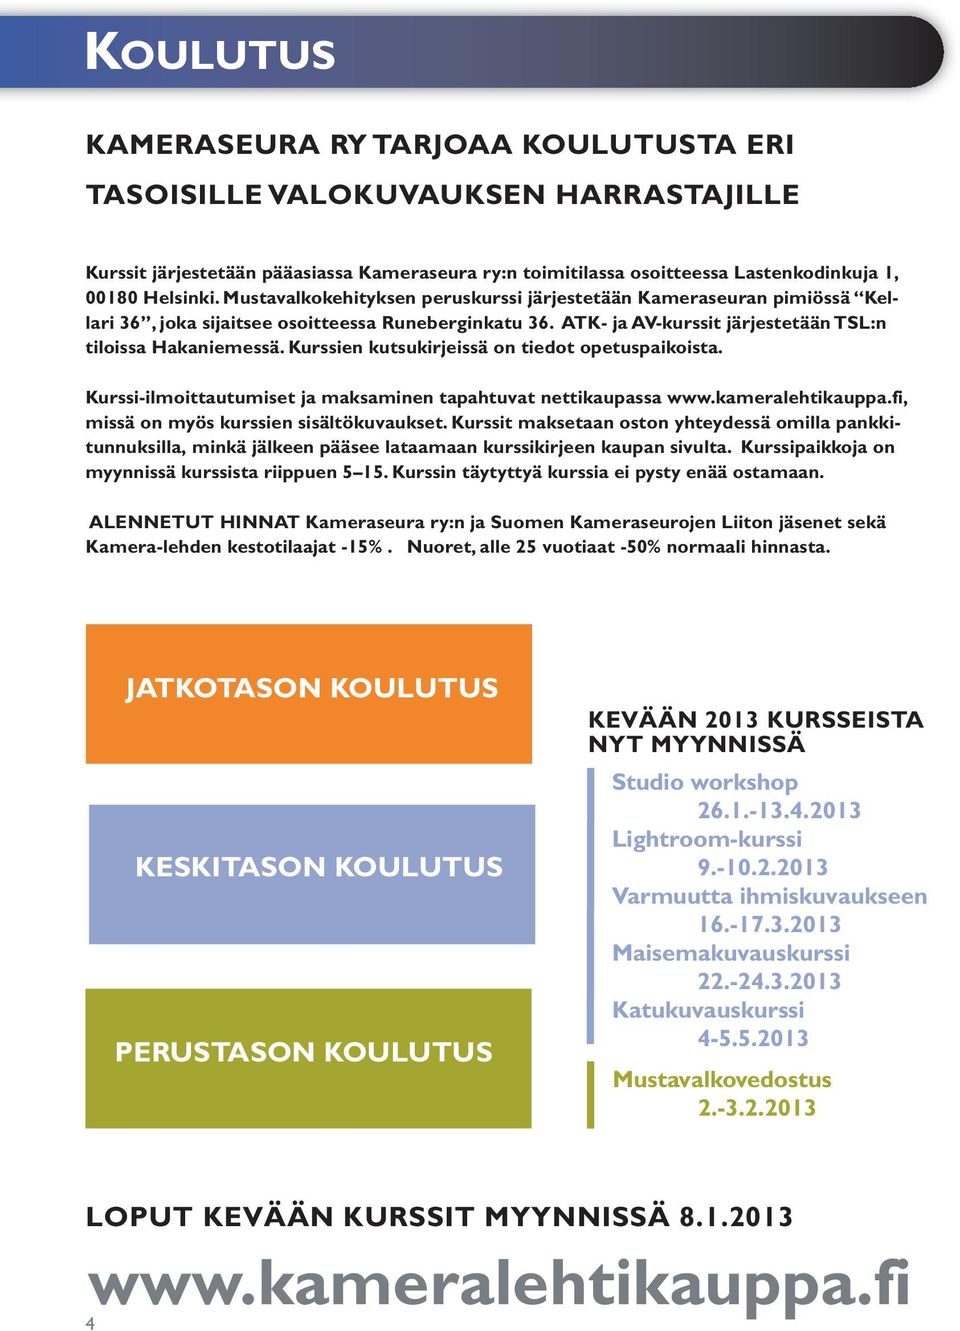 Kurssien kutsukirjeissä on tiedot opetuspaikoista. Kurssi-ilmoittautumiset ja maksaminen tapahtuvat nettikaupassa www.kameralehtikauppa.fi, missä on myös kurssien sisältökuvaukset.